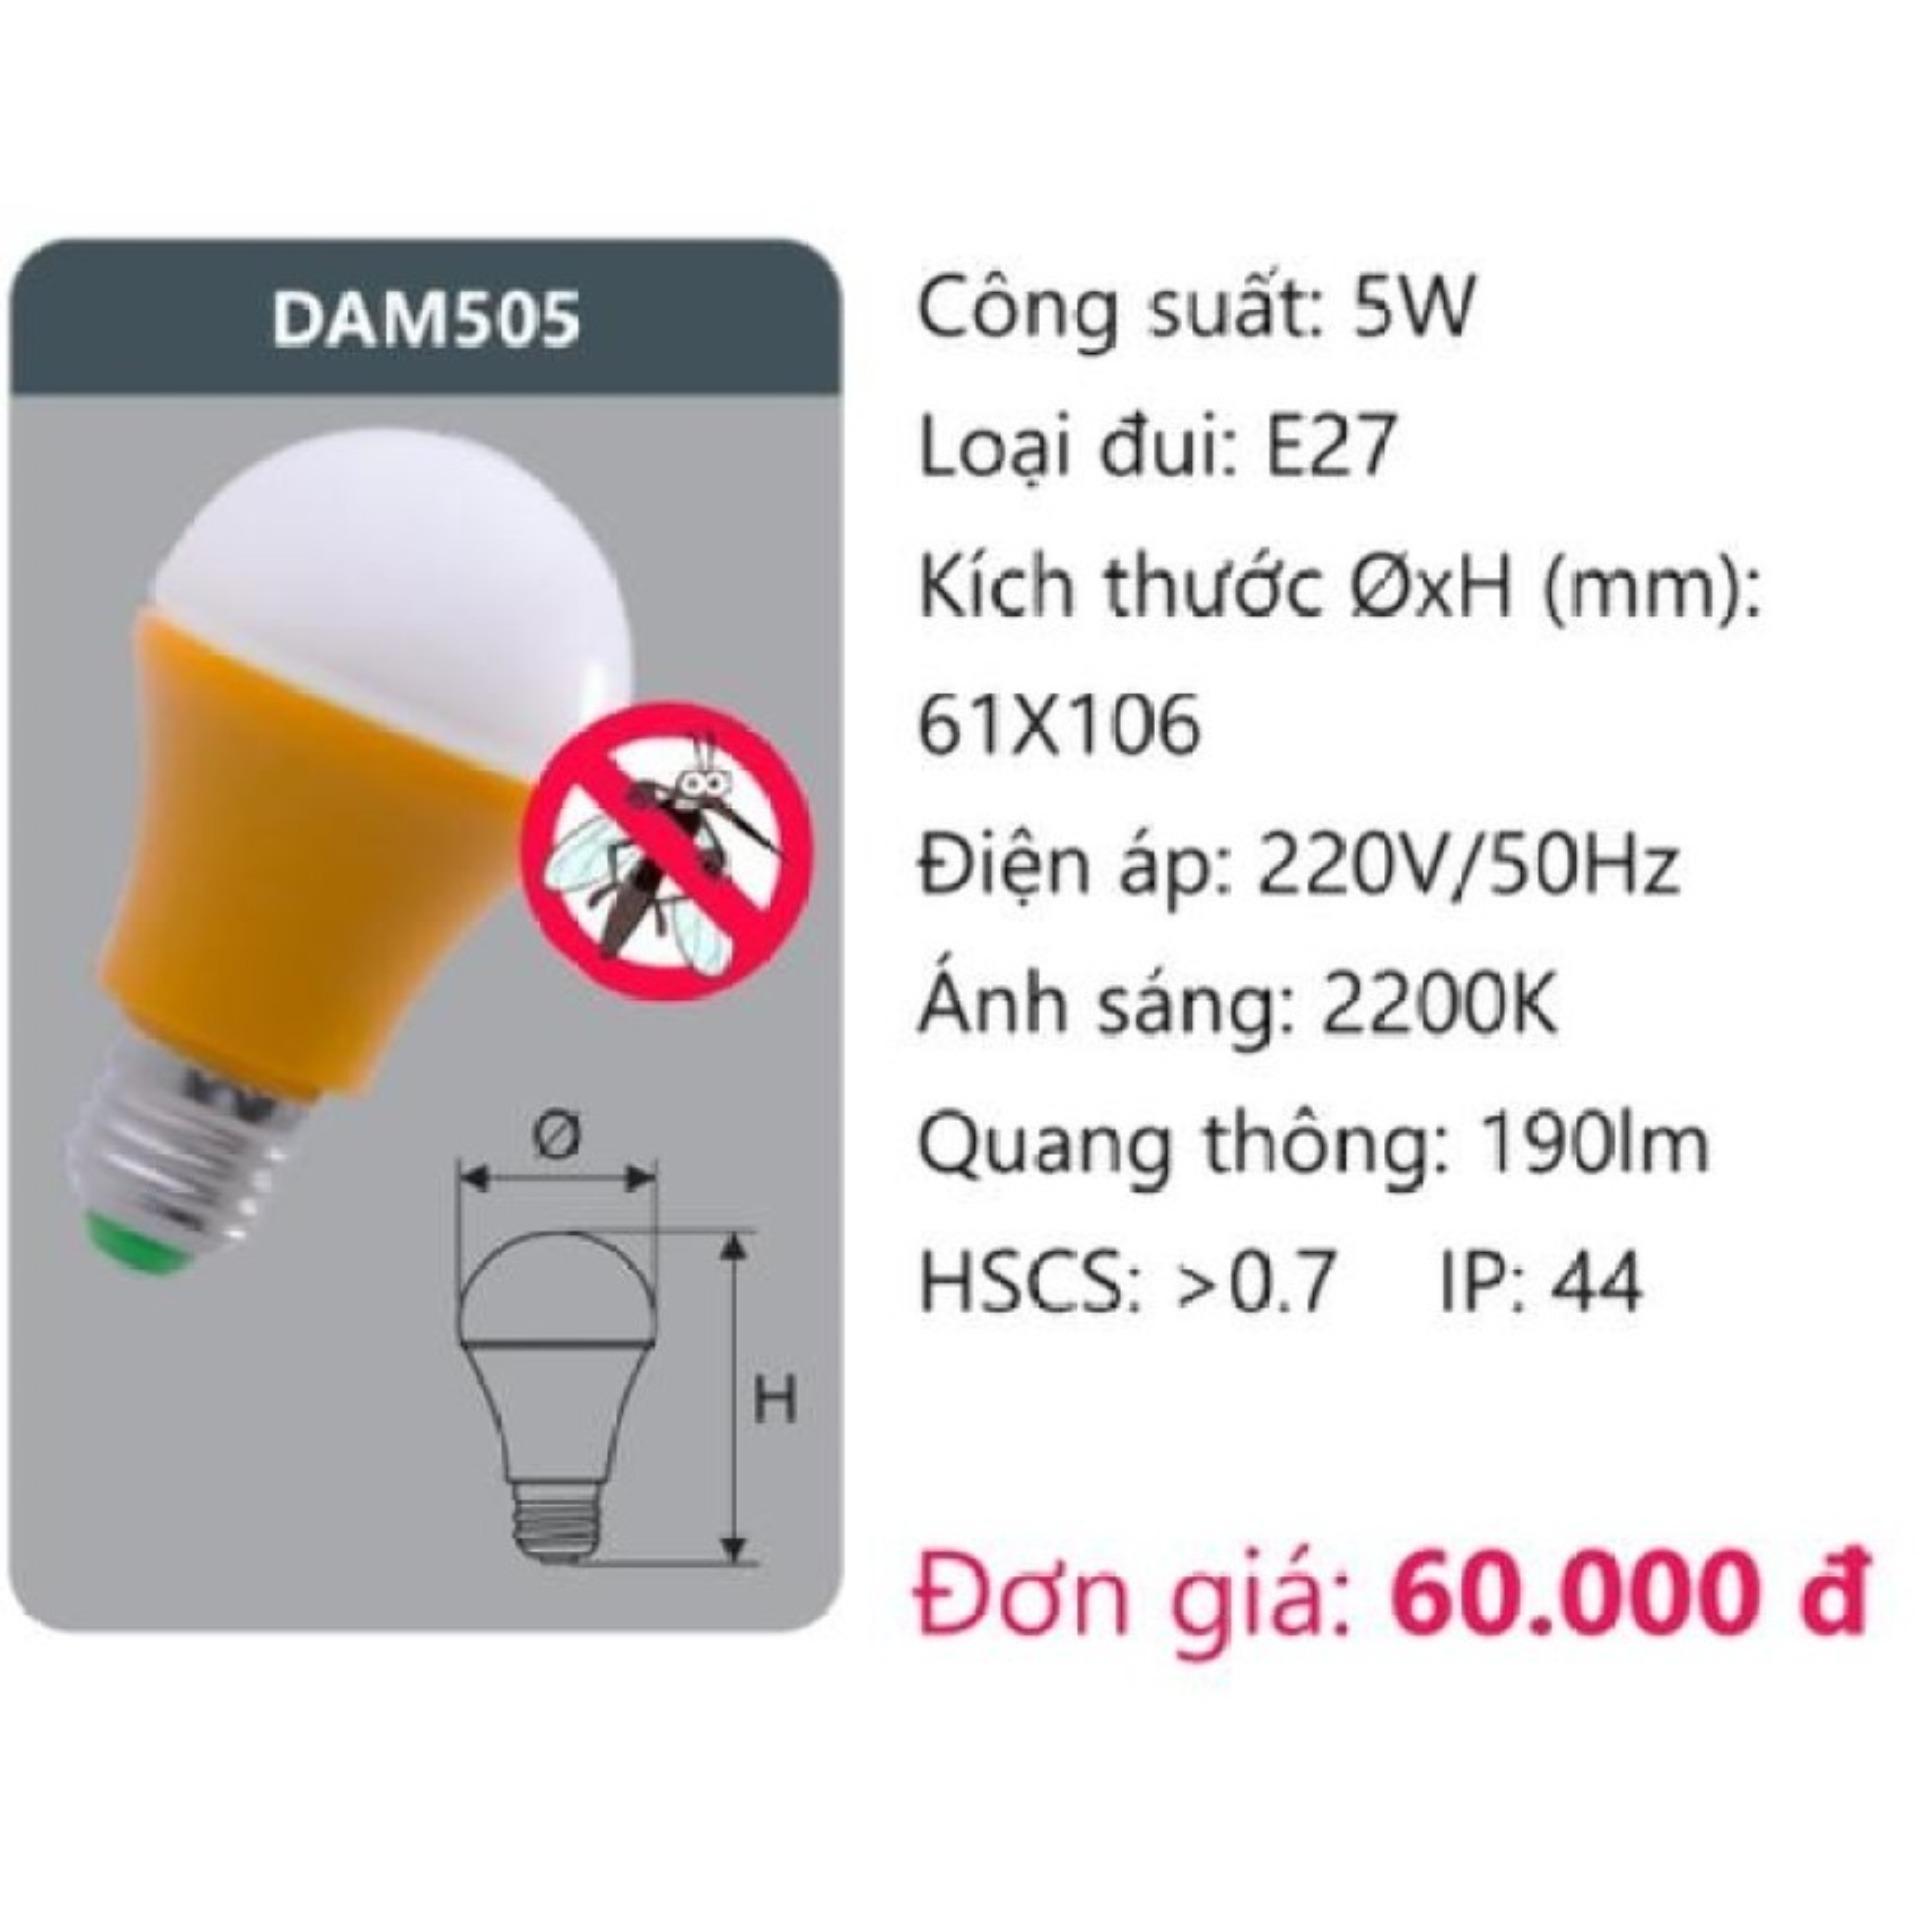 BÓNG LED ĐUỔI MUỖI 5W (DAM505)